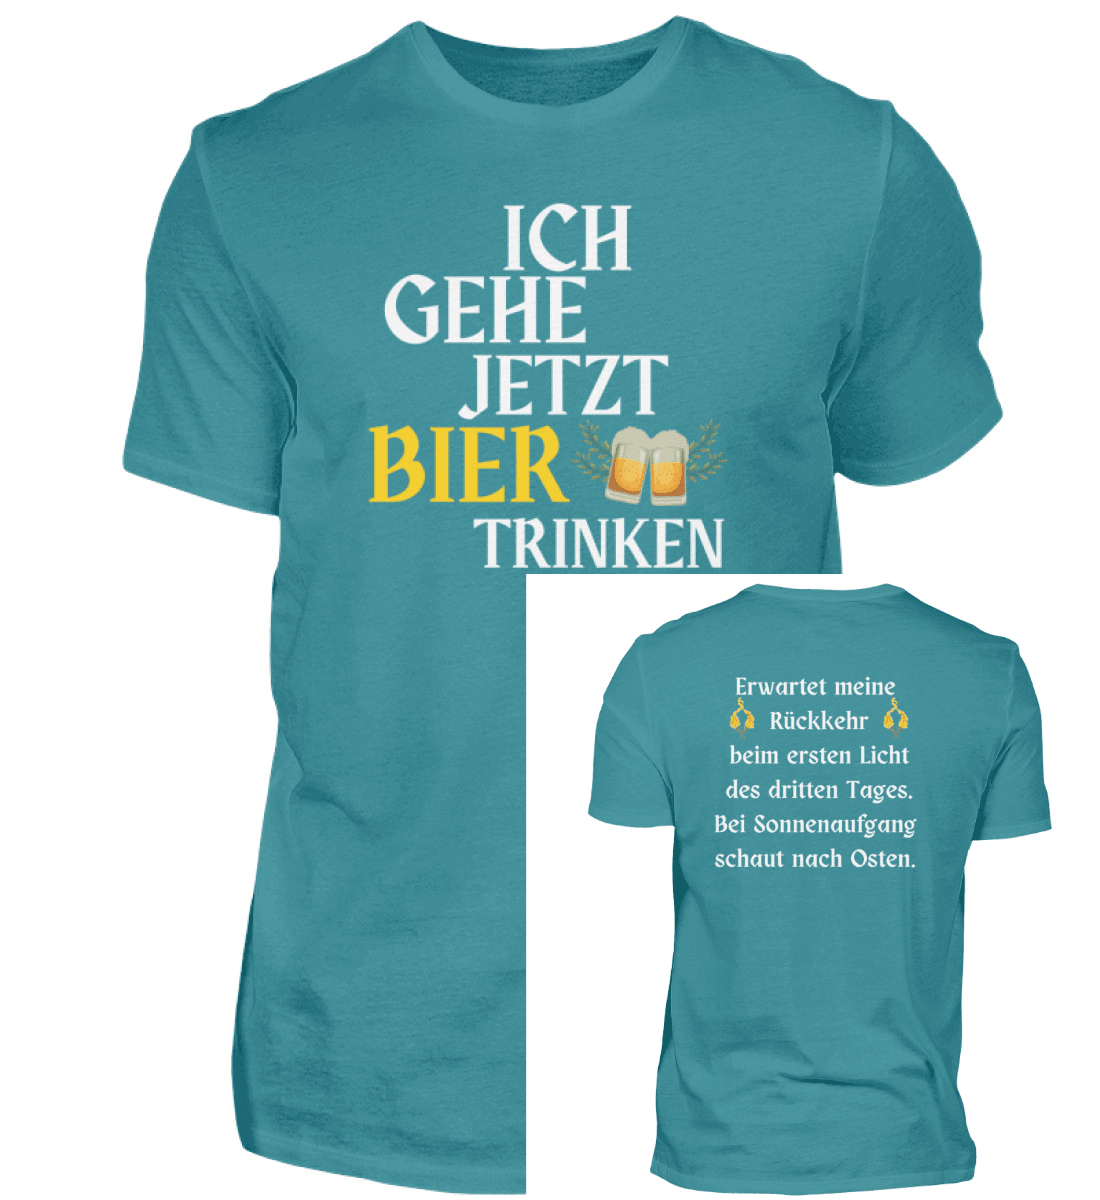 BIER TRINKEN - Herren Shirt - einschenken24.de